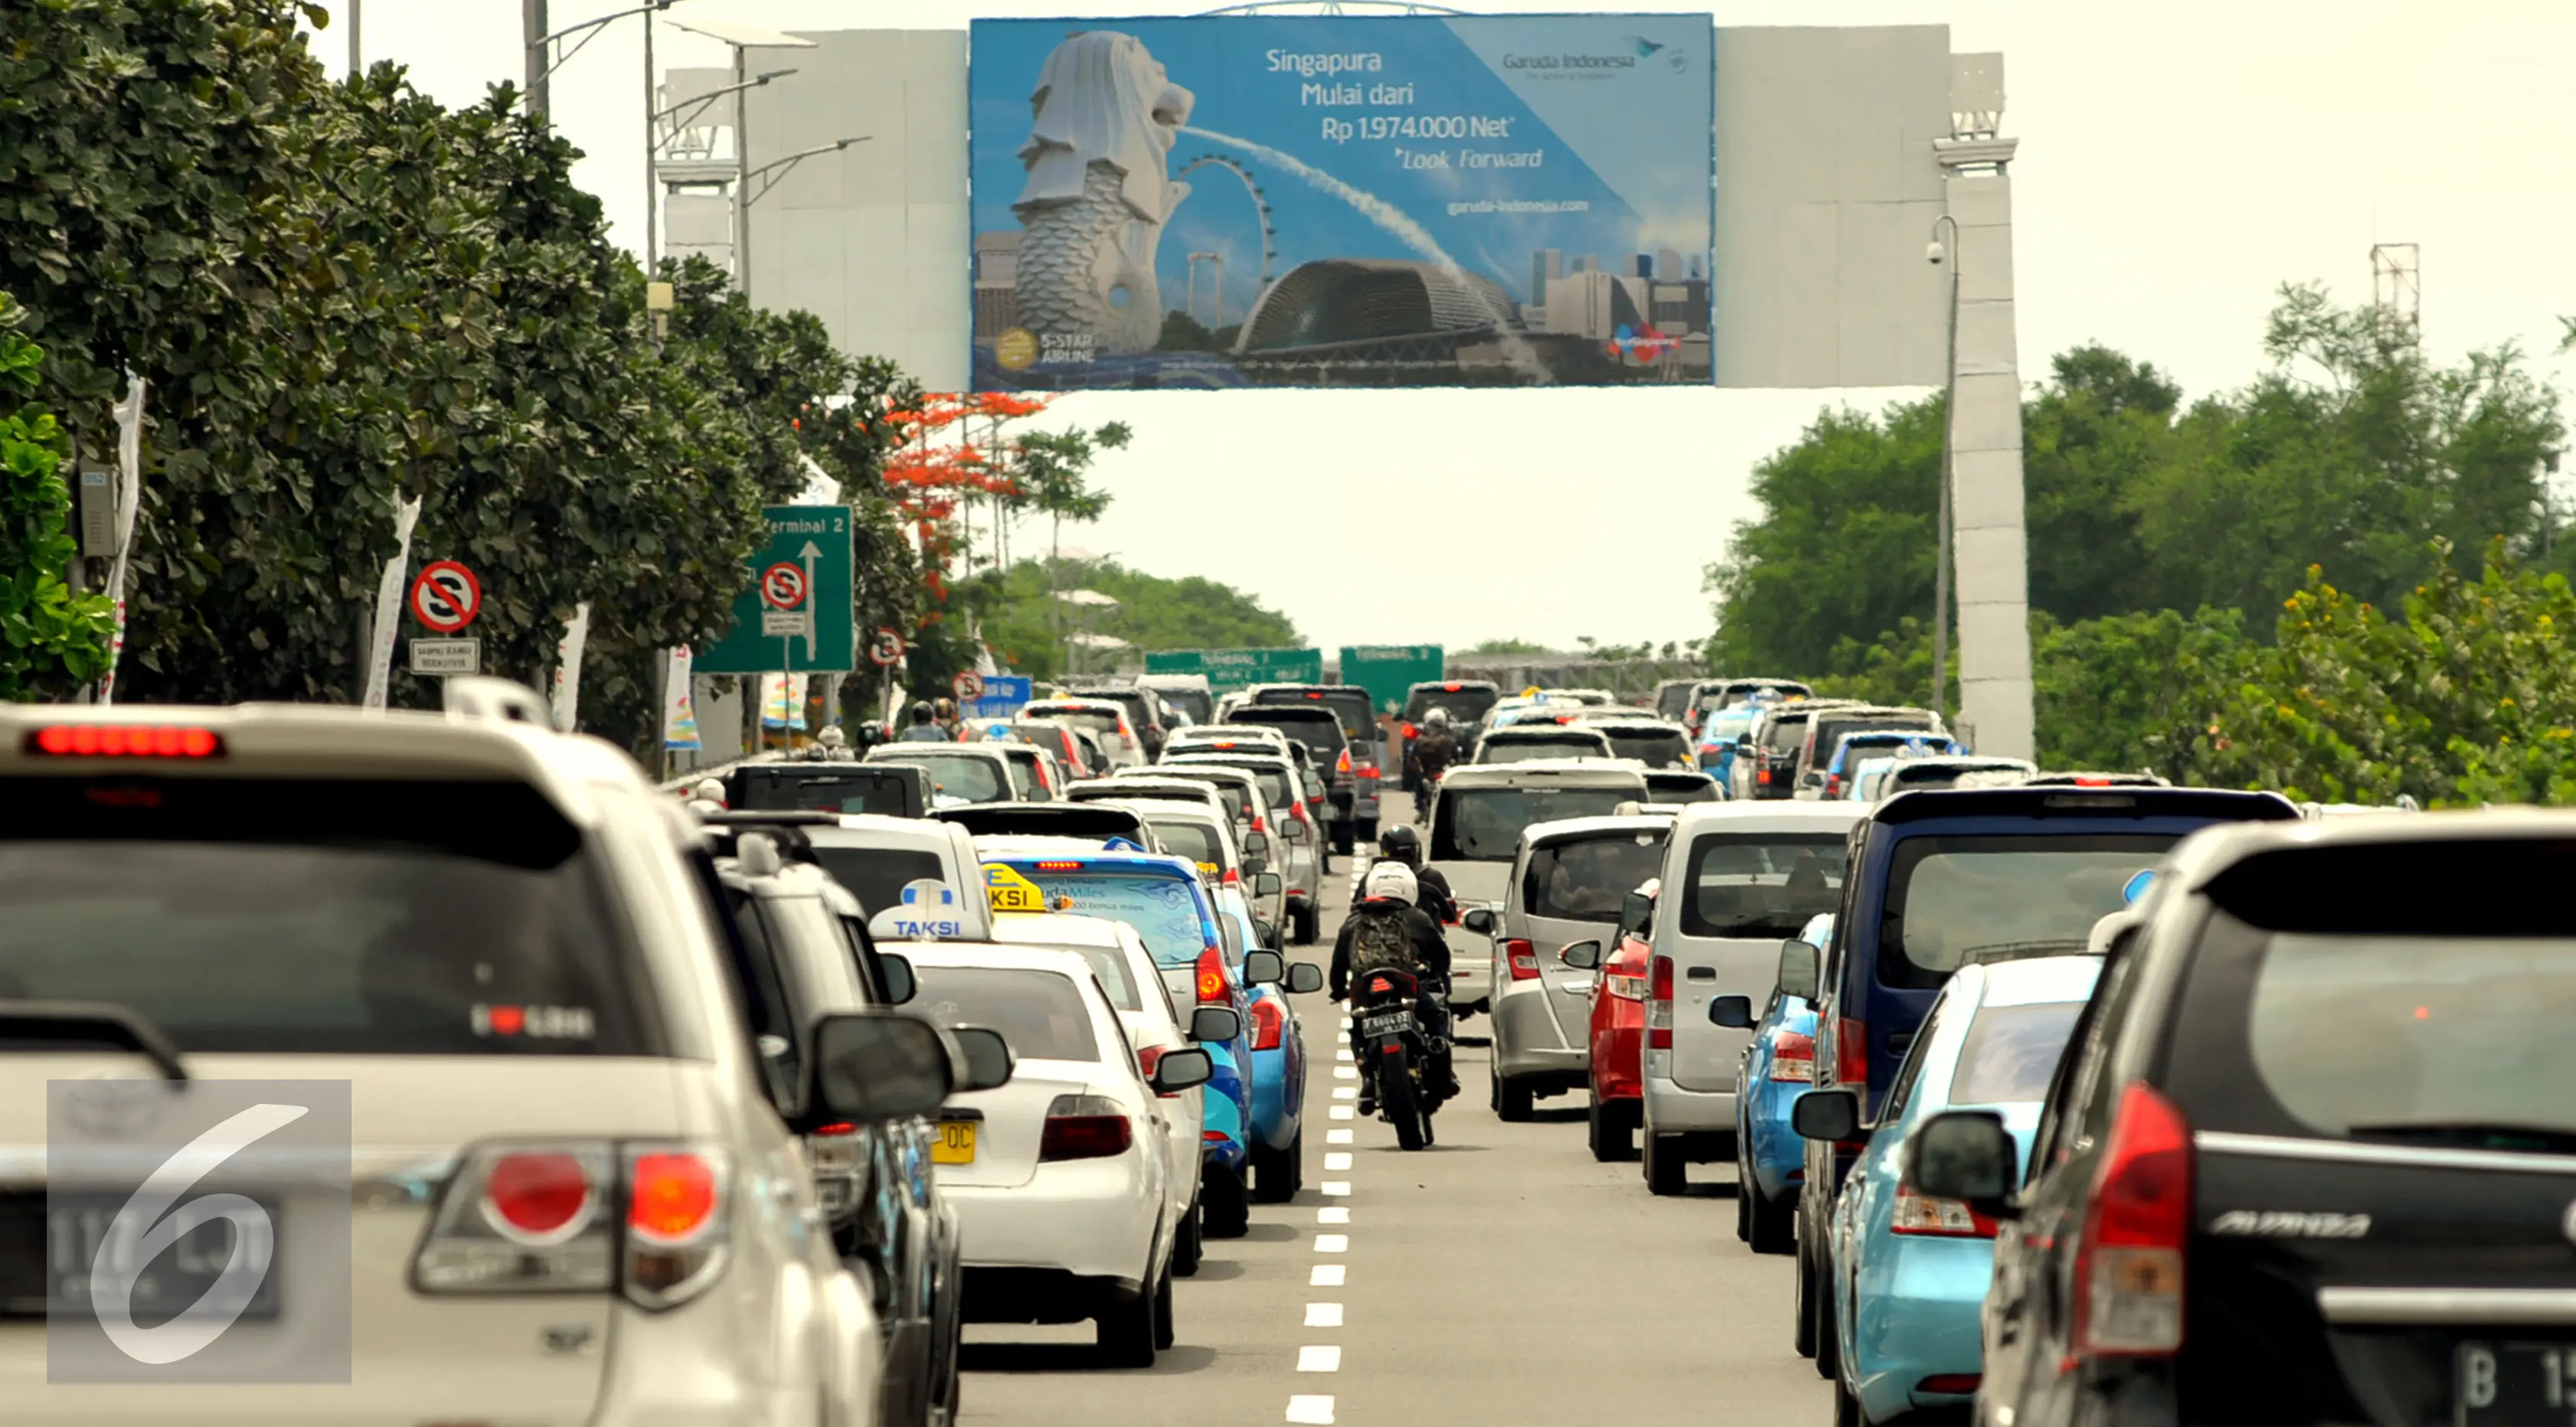 Suasana arus lalu lintas di sepanjang ruas jalan tol Bandara Soekarno Hatta, Cengkareng, Tangerang, Rabu (24/12). Meningkatnya penumpang pada Natal dan Tahun Baru tahun ini membuat kemacetan di Terminal 1 dan 2. (Liputan6.com/Faisal R Syam)